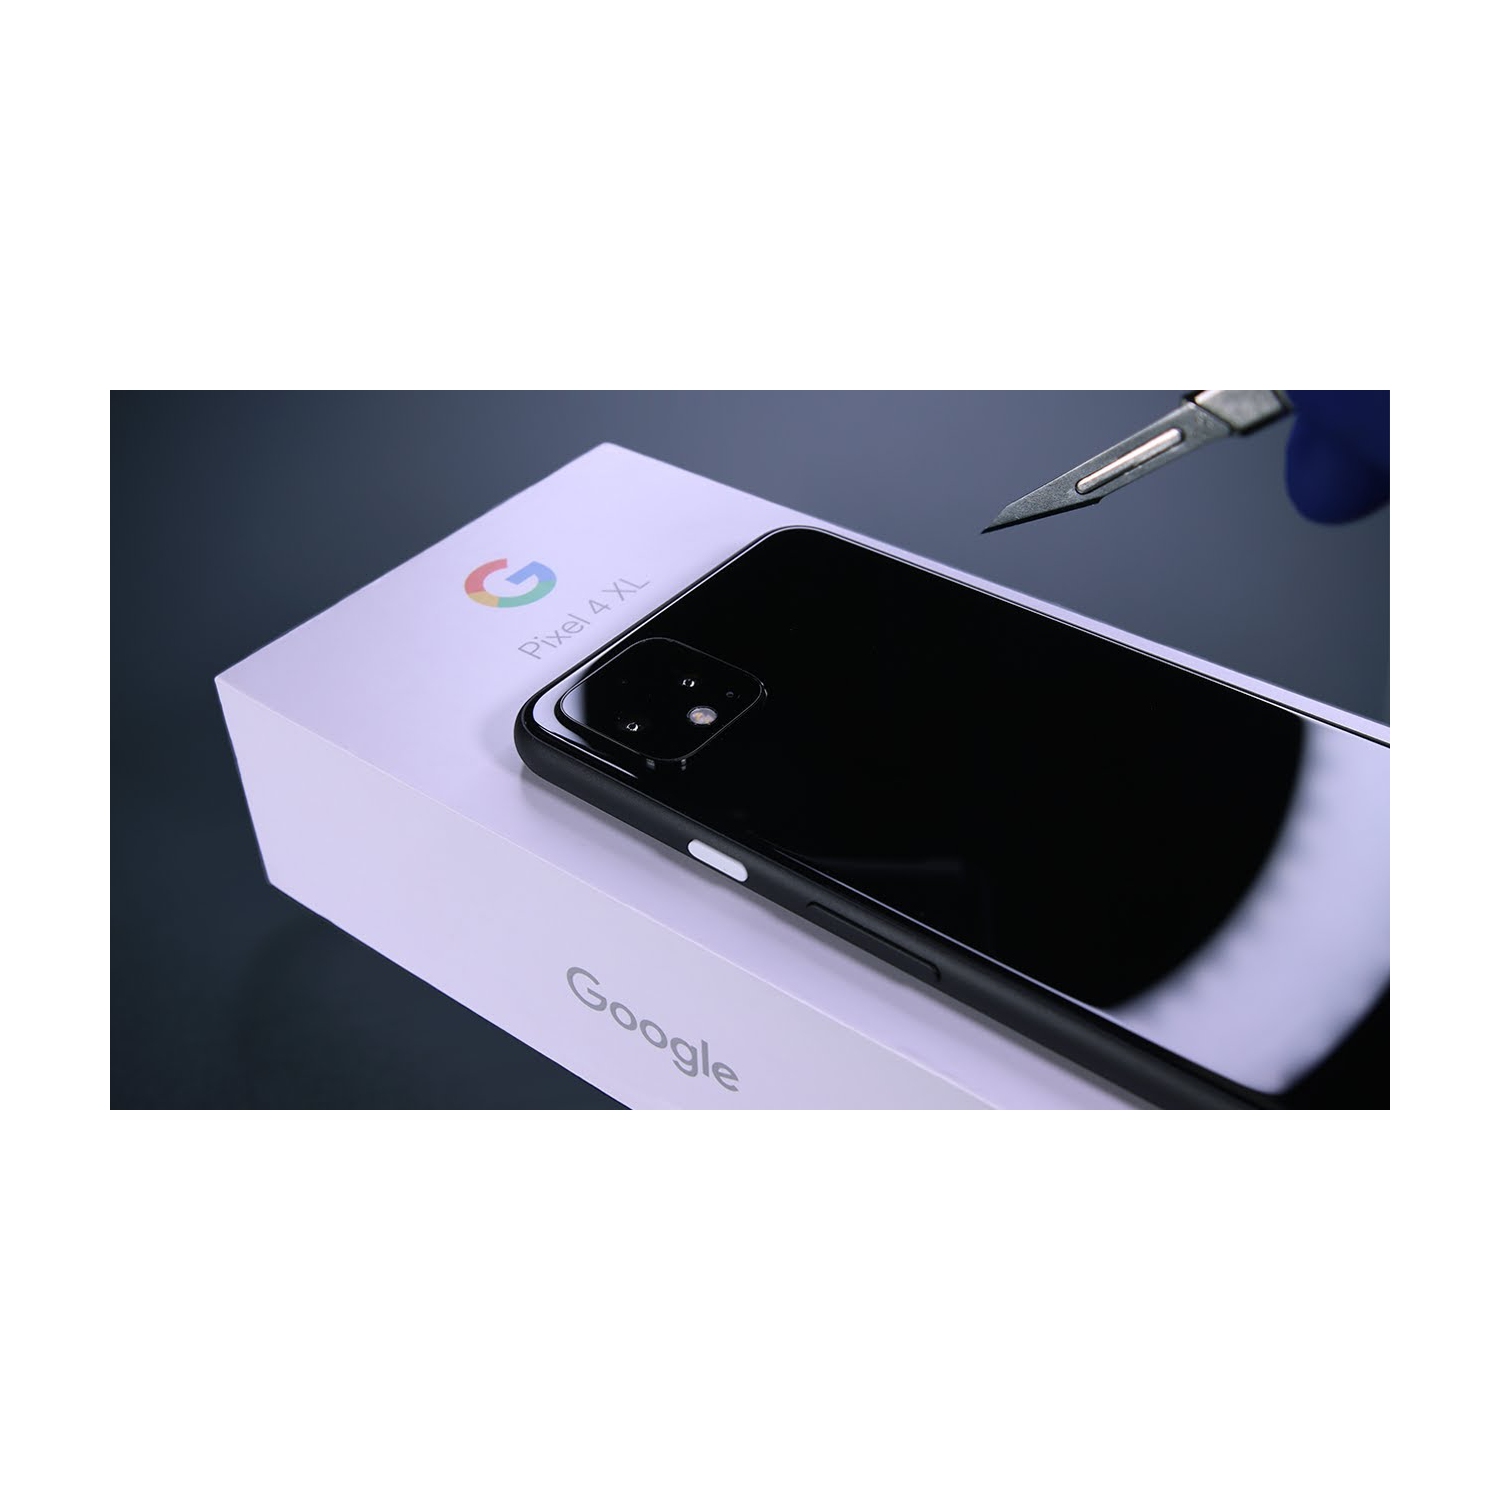 Google Pixel 4 XL 64GB Smartphone - Just Black - Unlocked - Brand New